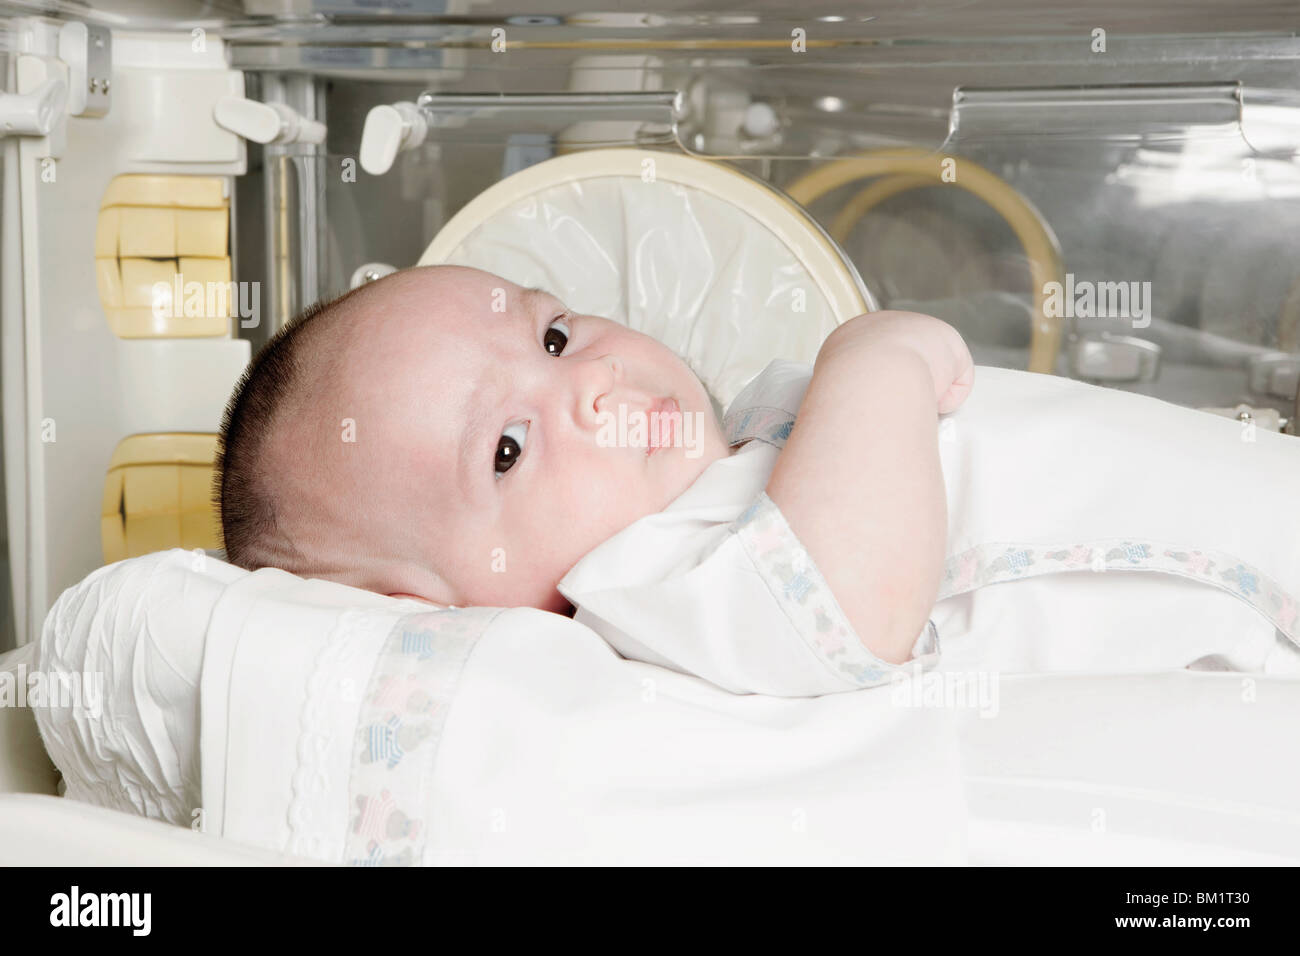 Bebé Recién Nacido Conseguir La Terapia De Luz En La Incubadora De Bebés  Fotos, retratos, imágenes y fotografía de archivo libres de derecho. Image  56615900